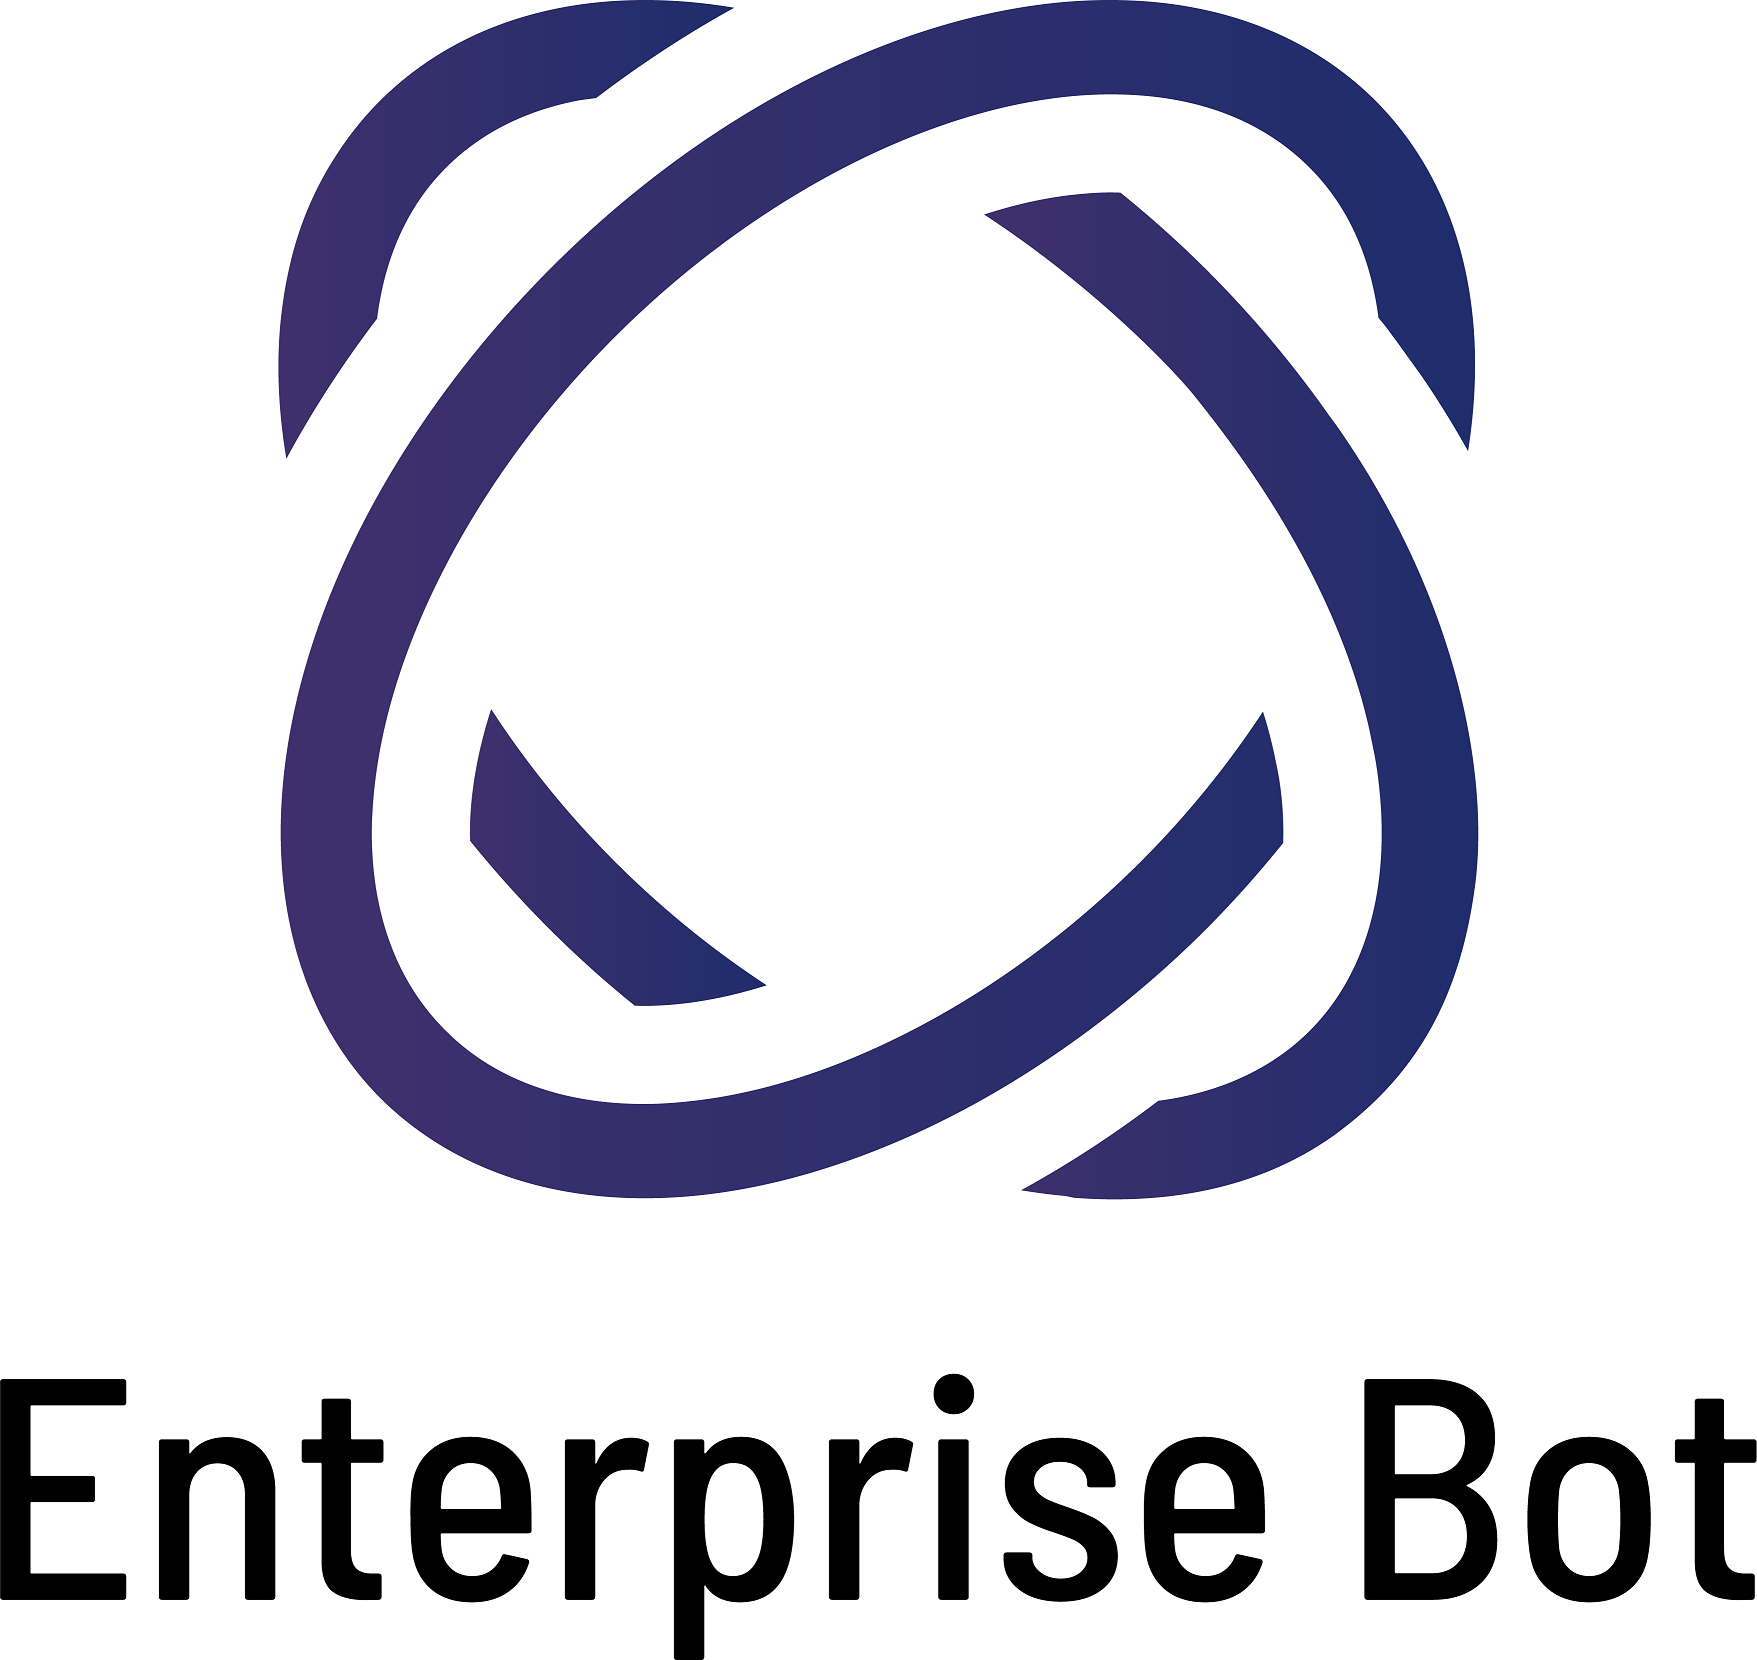 Enterprise Bot